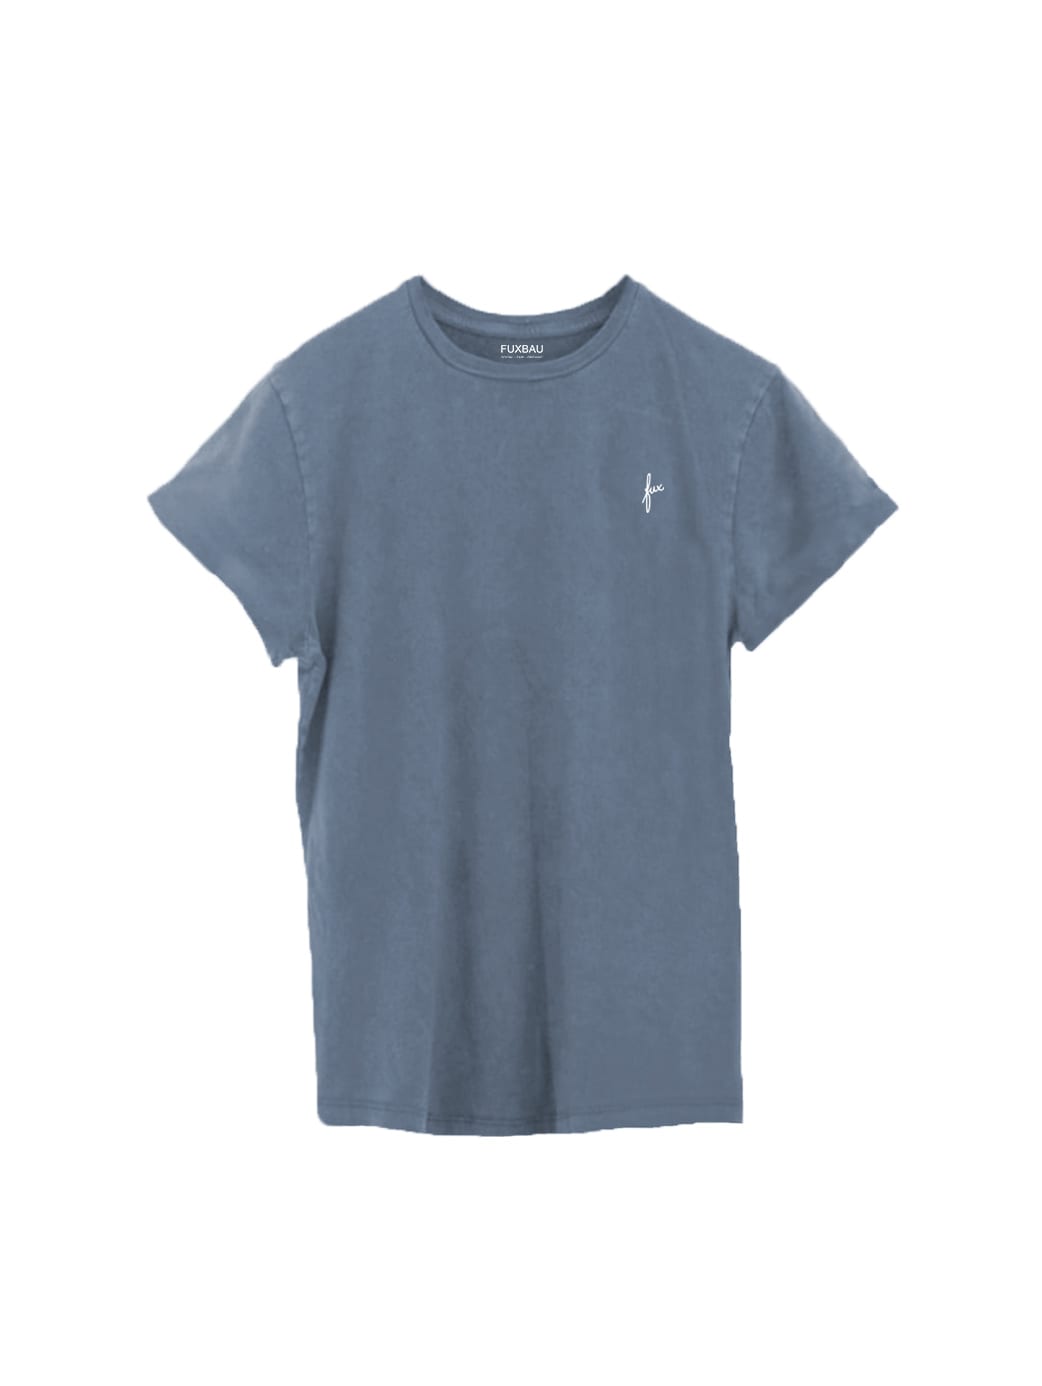 Männer fux T-Shirt - seeblau